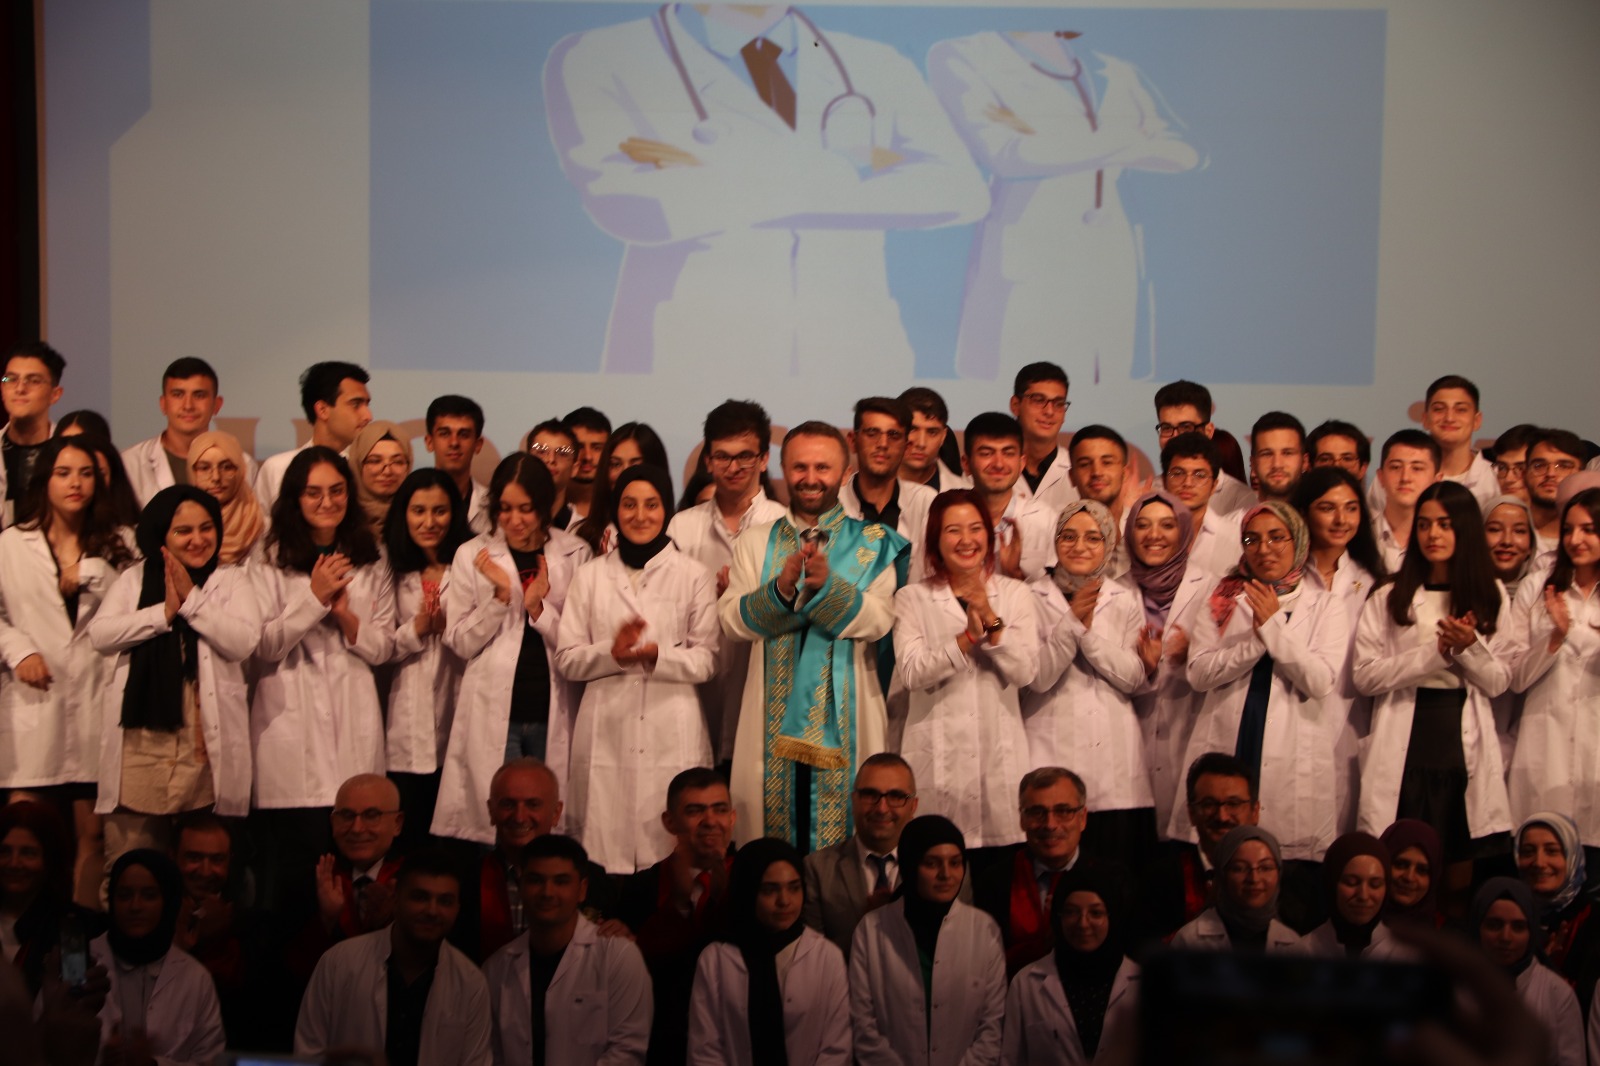 RTEÜ Tıp Fakültesi Beyaz Önlük Giyme Töreni Gerçekleştirildi